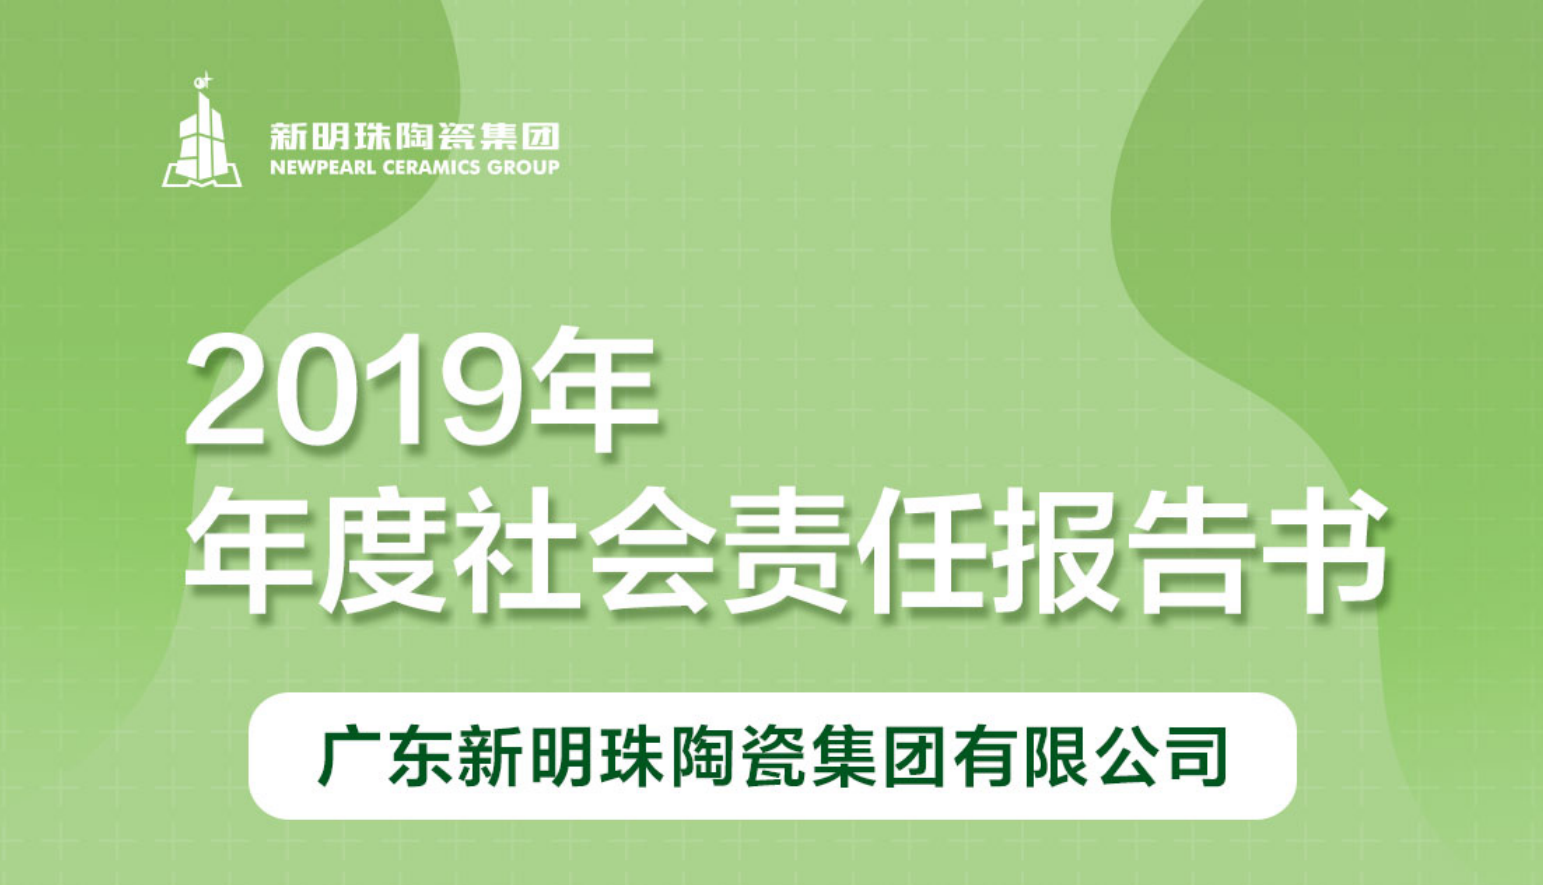 新明珠陶瓷集团2019年度社会责任报告